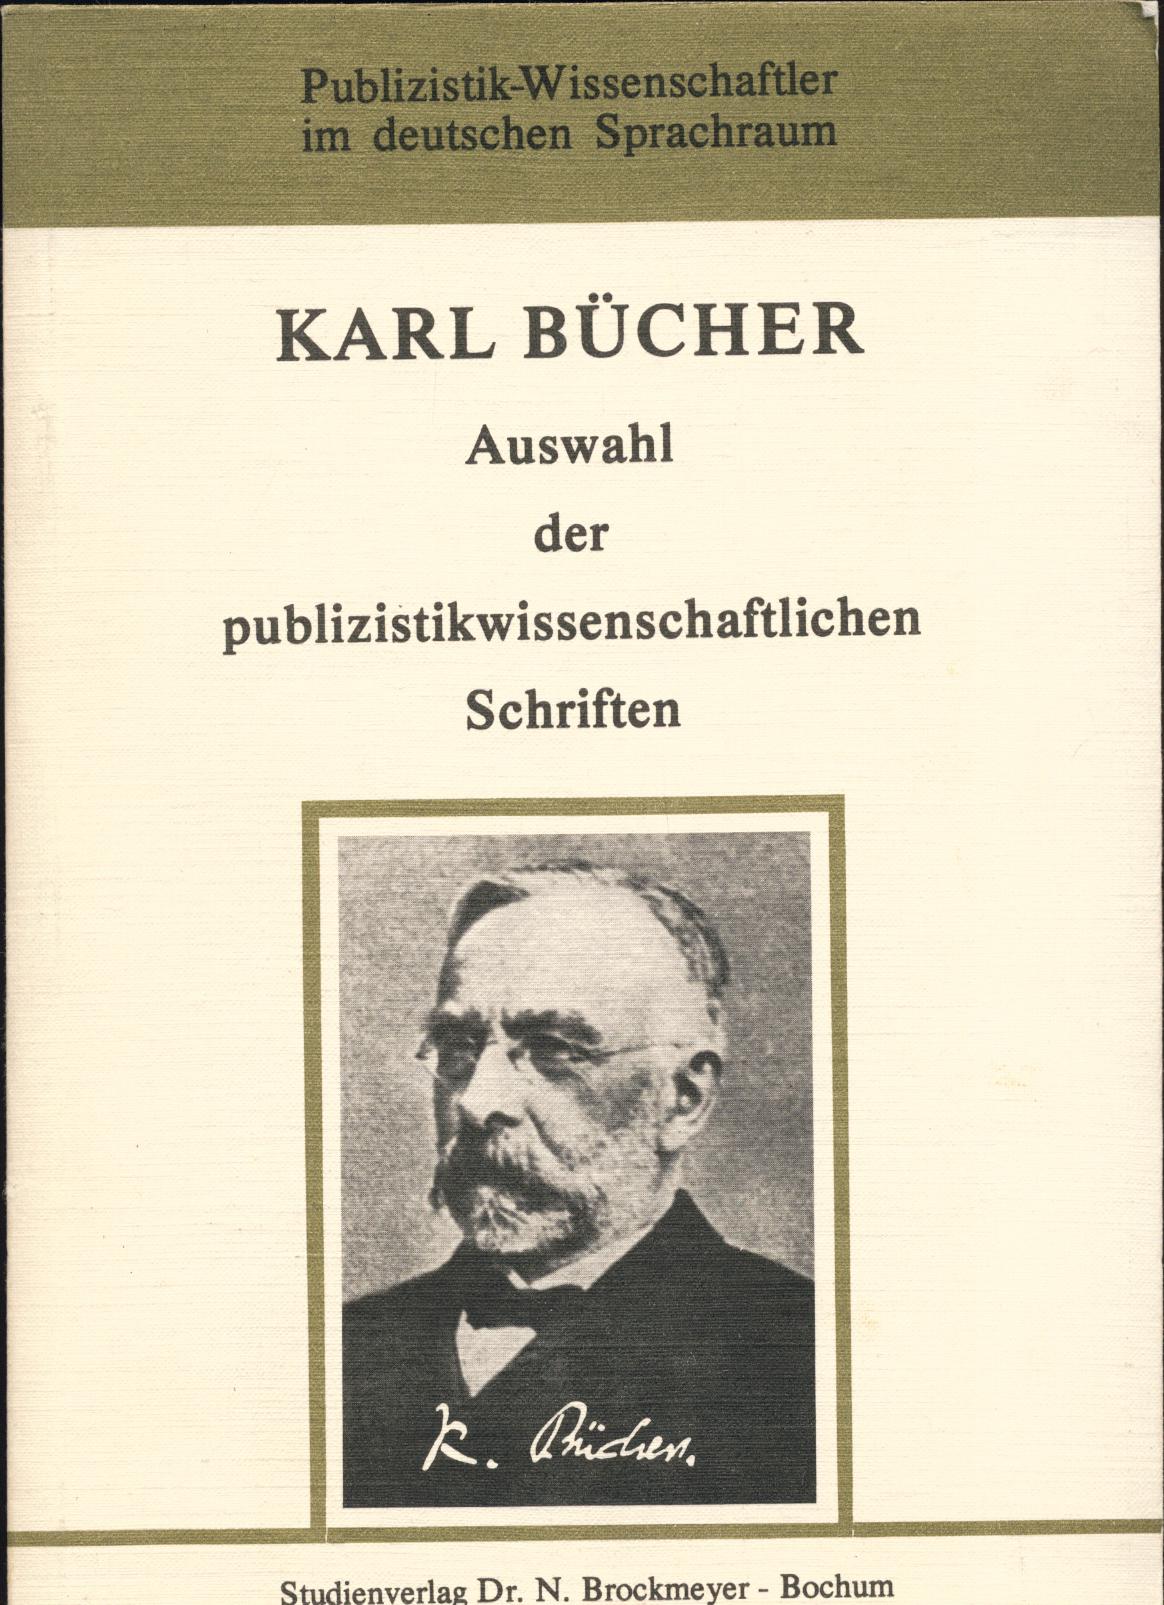 Karl Bücher - Auswahl der publizistikwissenschaftlichen Schriften - Bücher, Karl, Heinz-Dietrich Fischer und Horst Minte